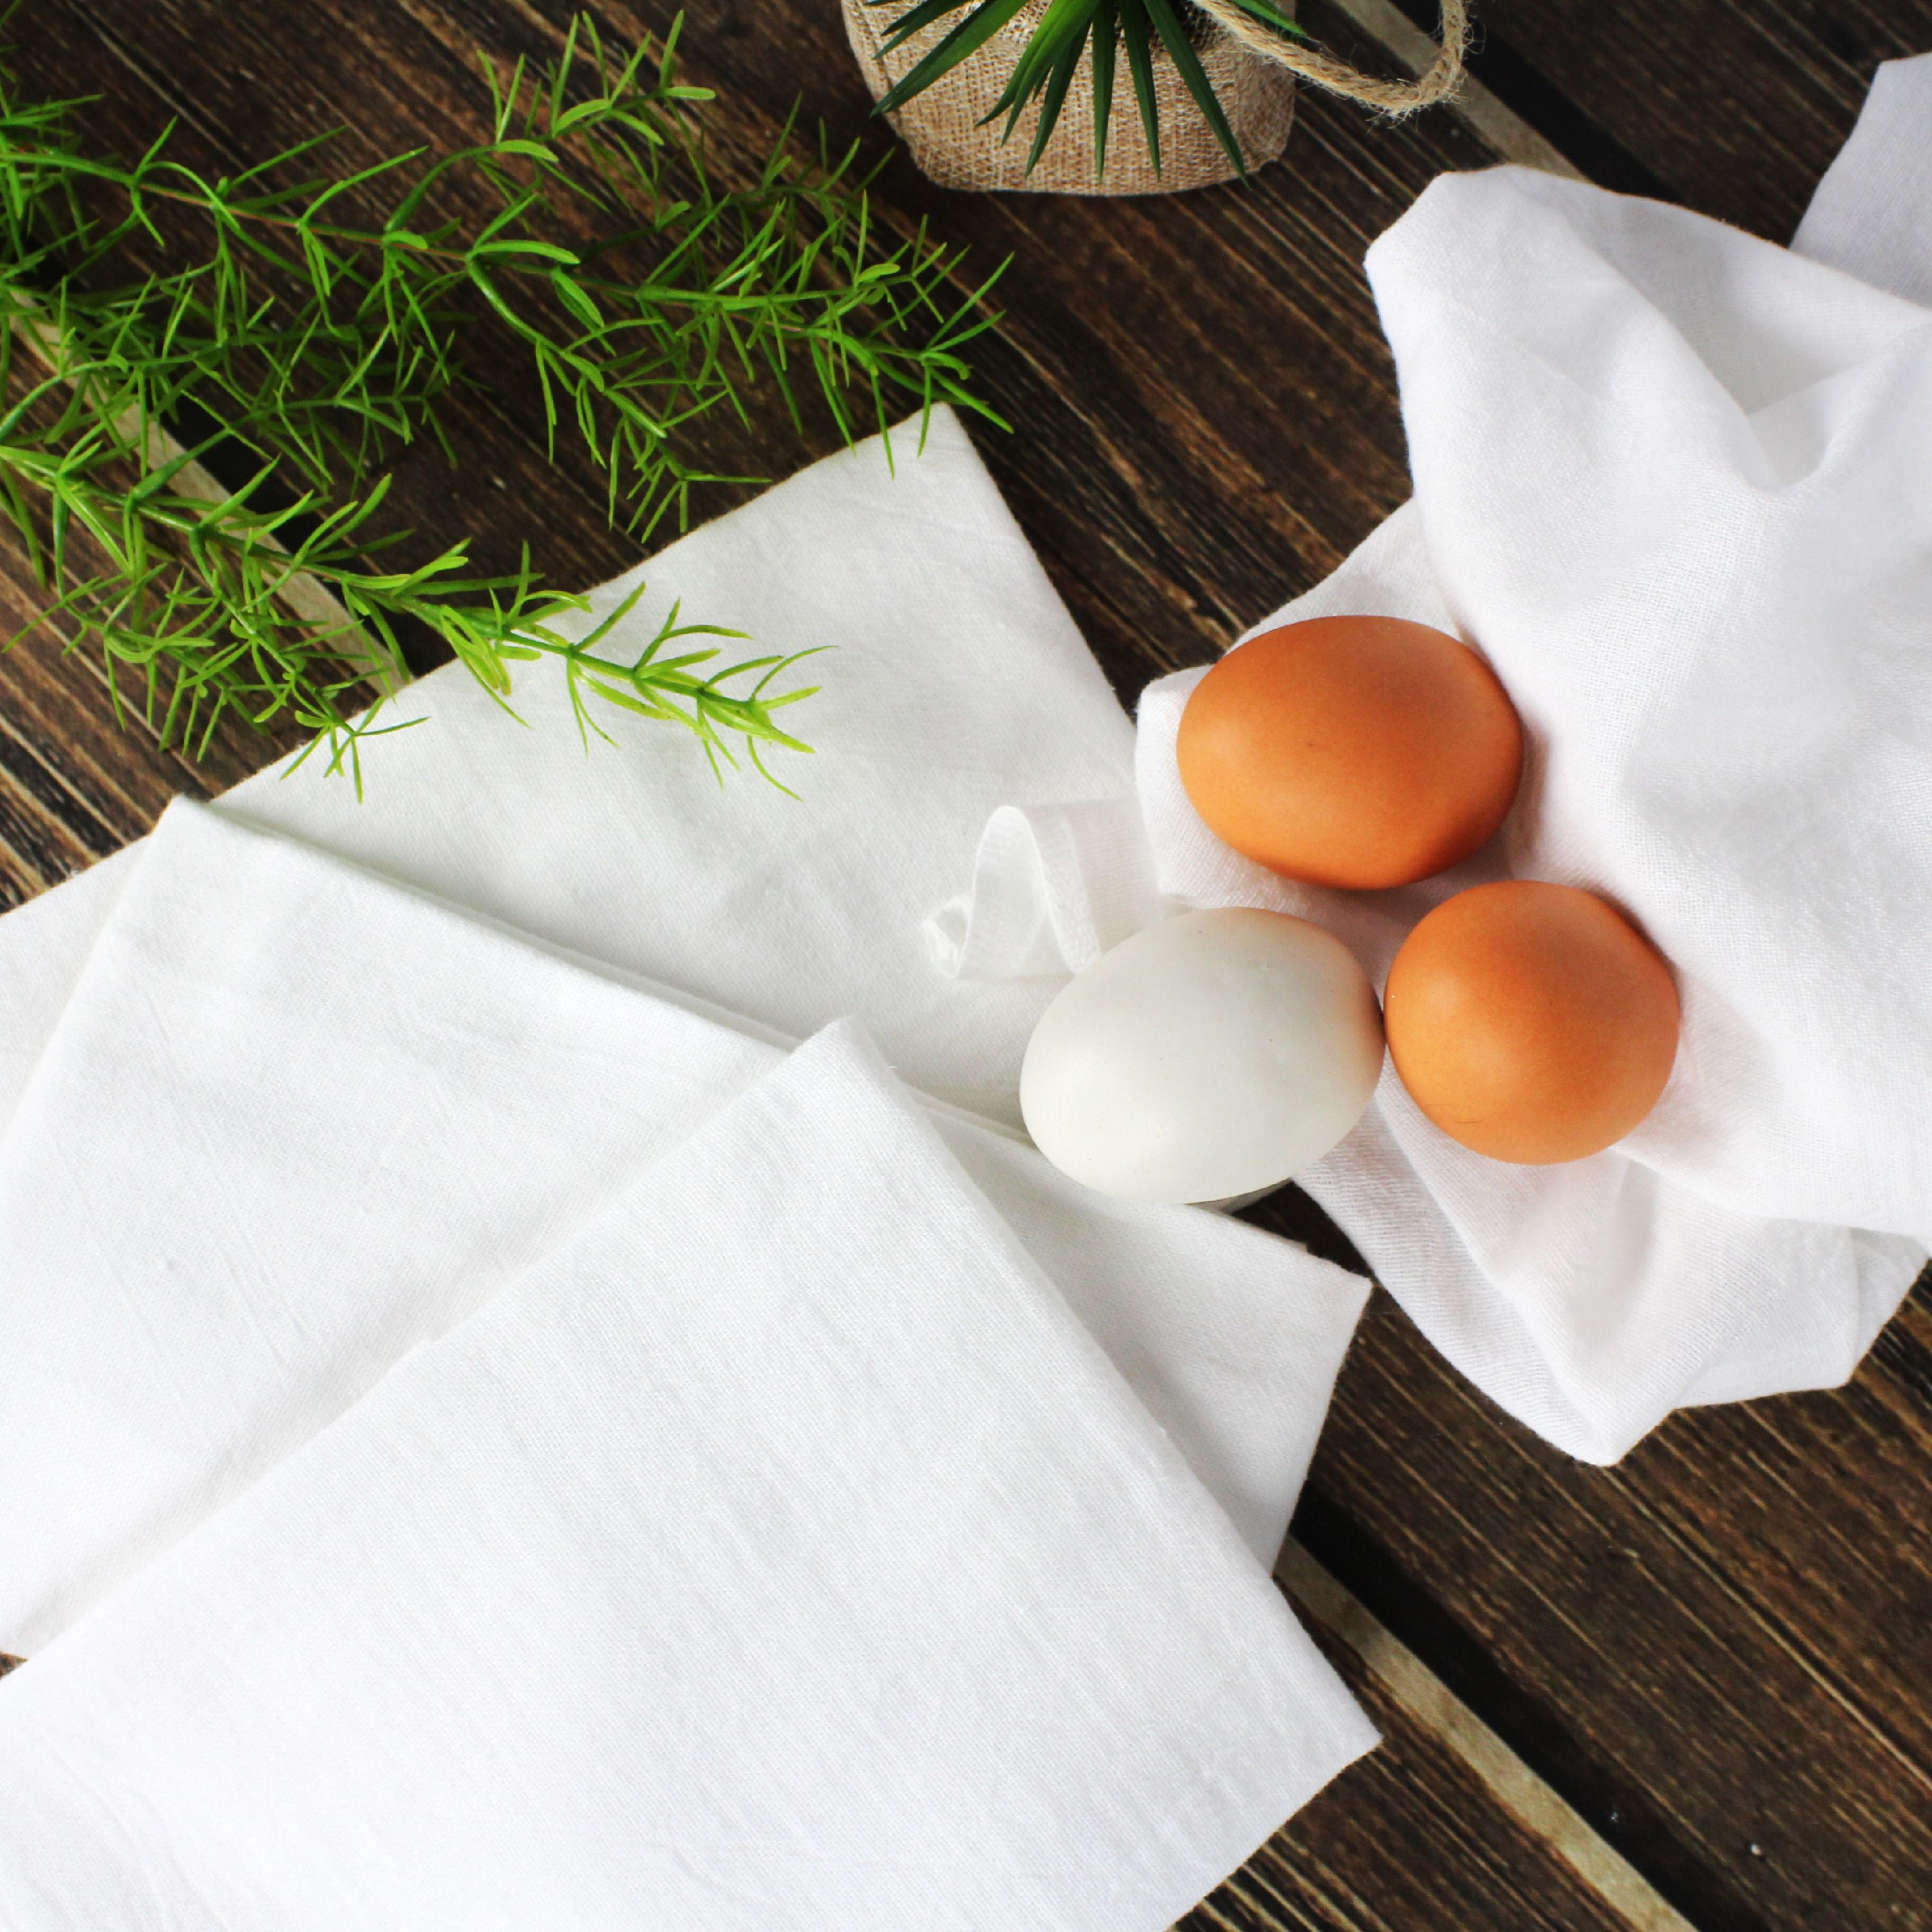  Organic Cotton Flour Sack Kitchen Towels - 10 Pack